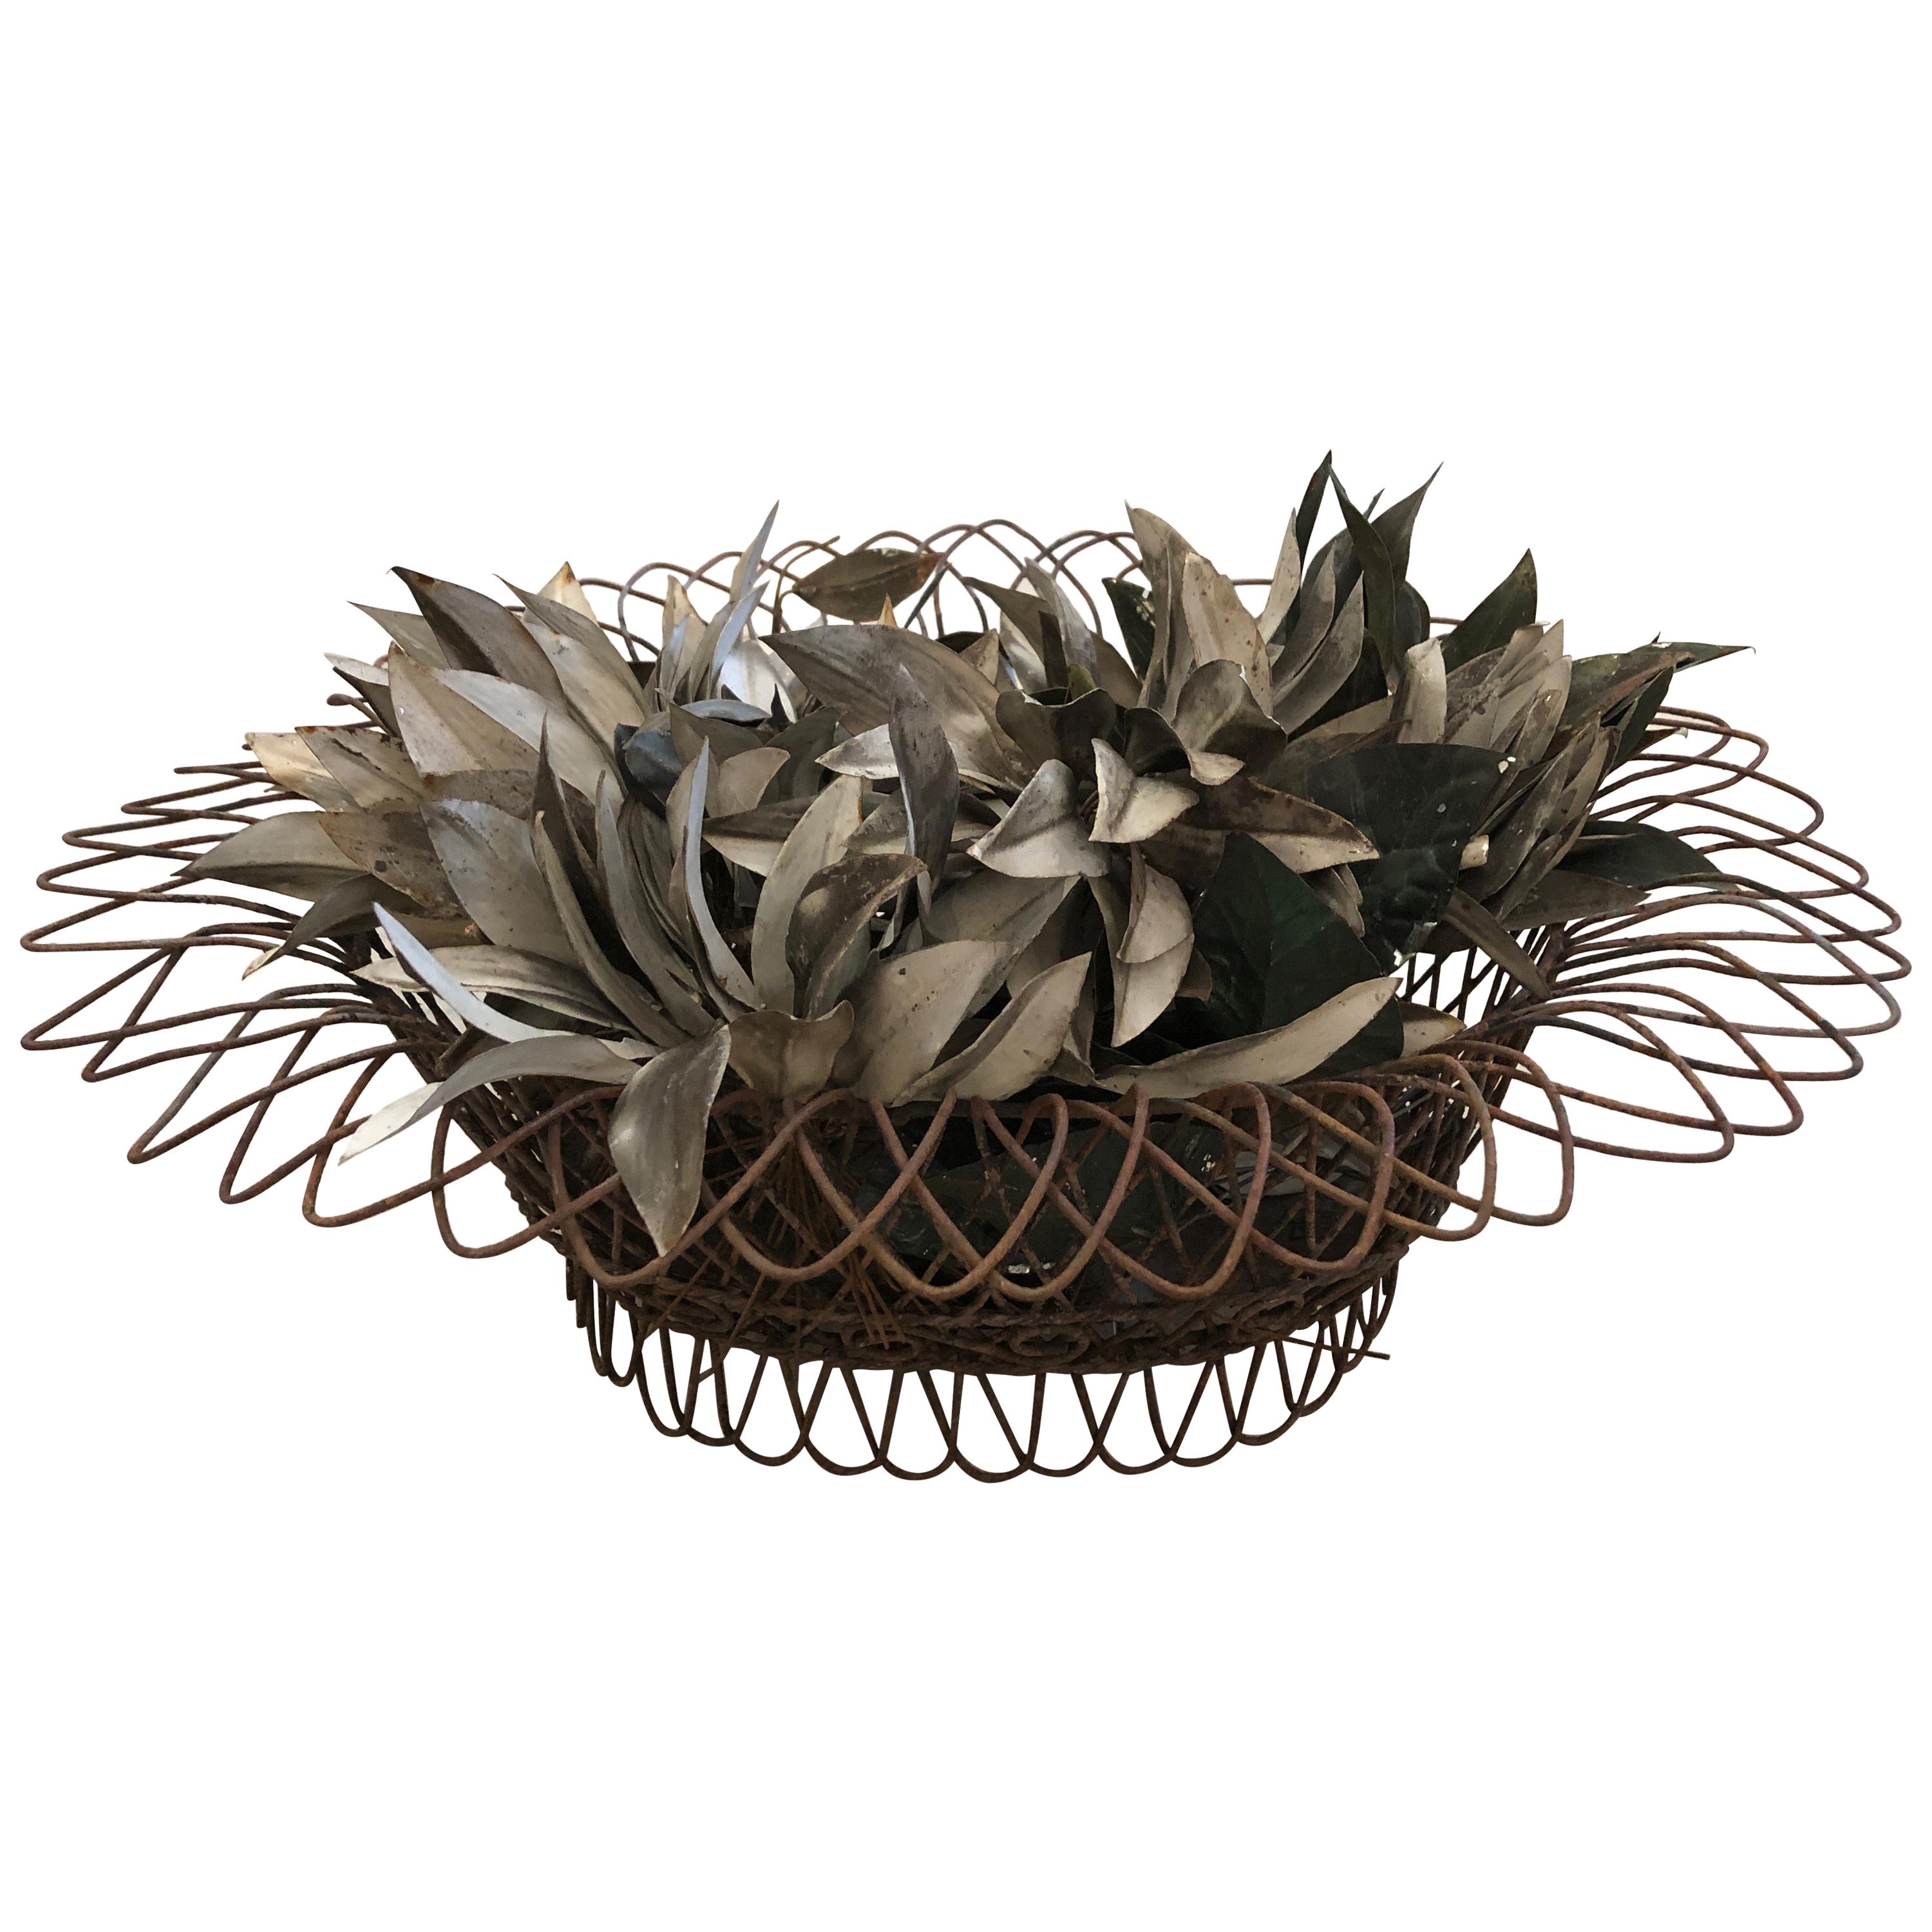 Incantevole cesto francese in filo di ferro con foglie decorative in legno.